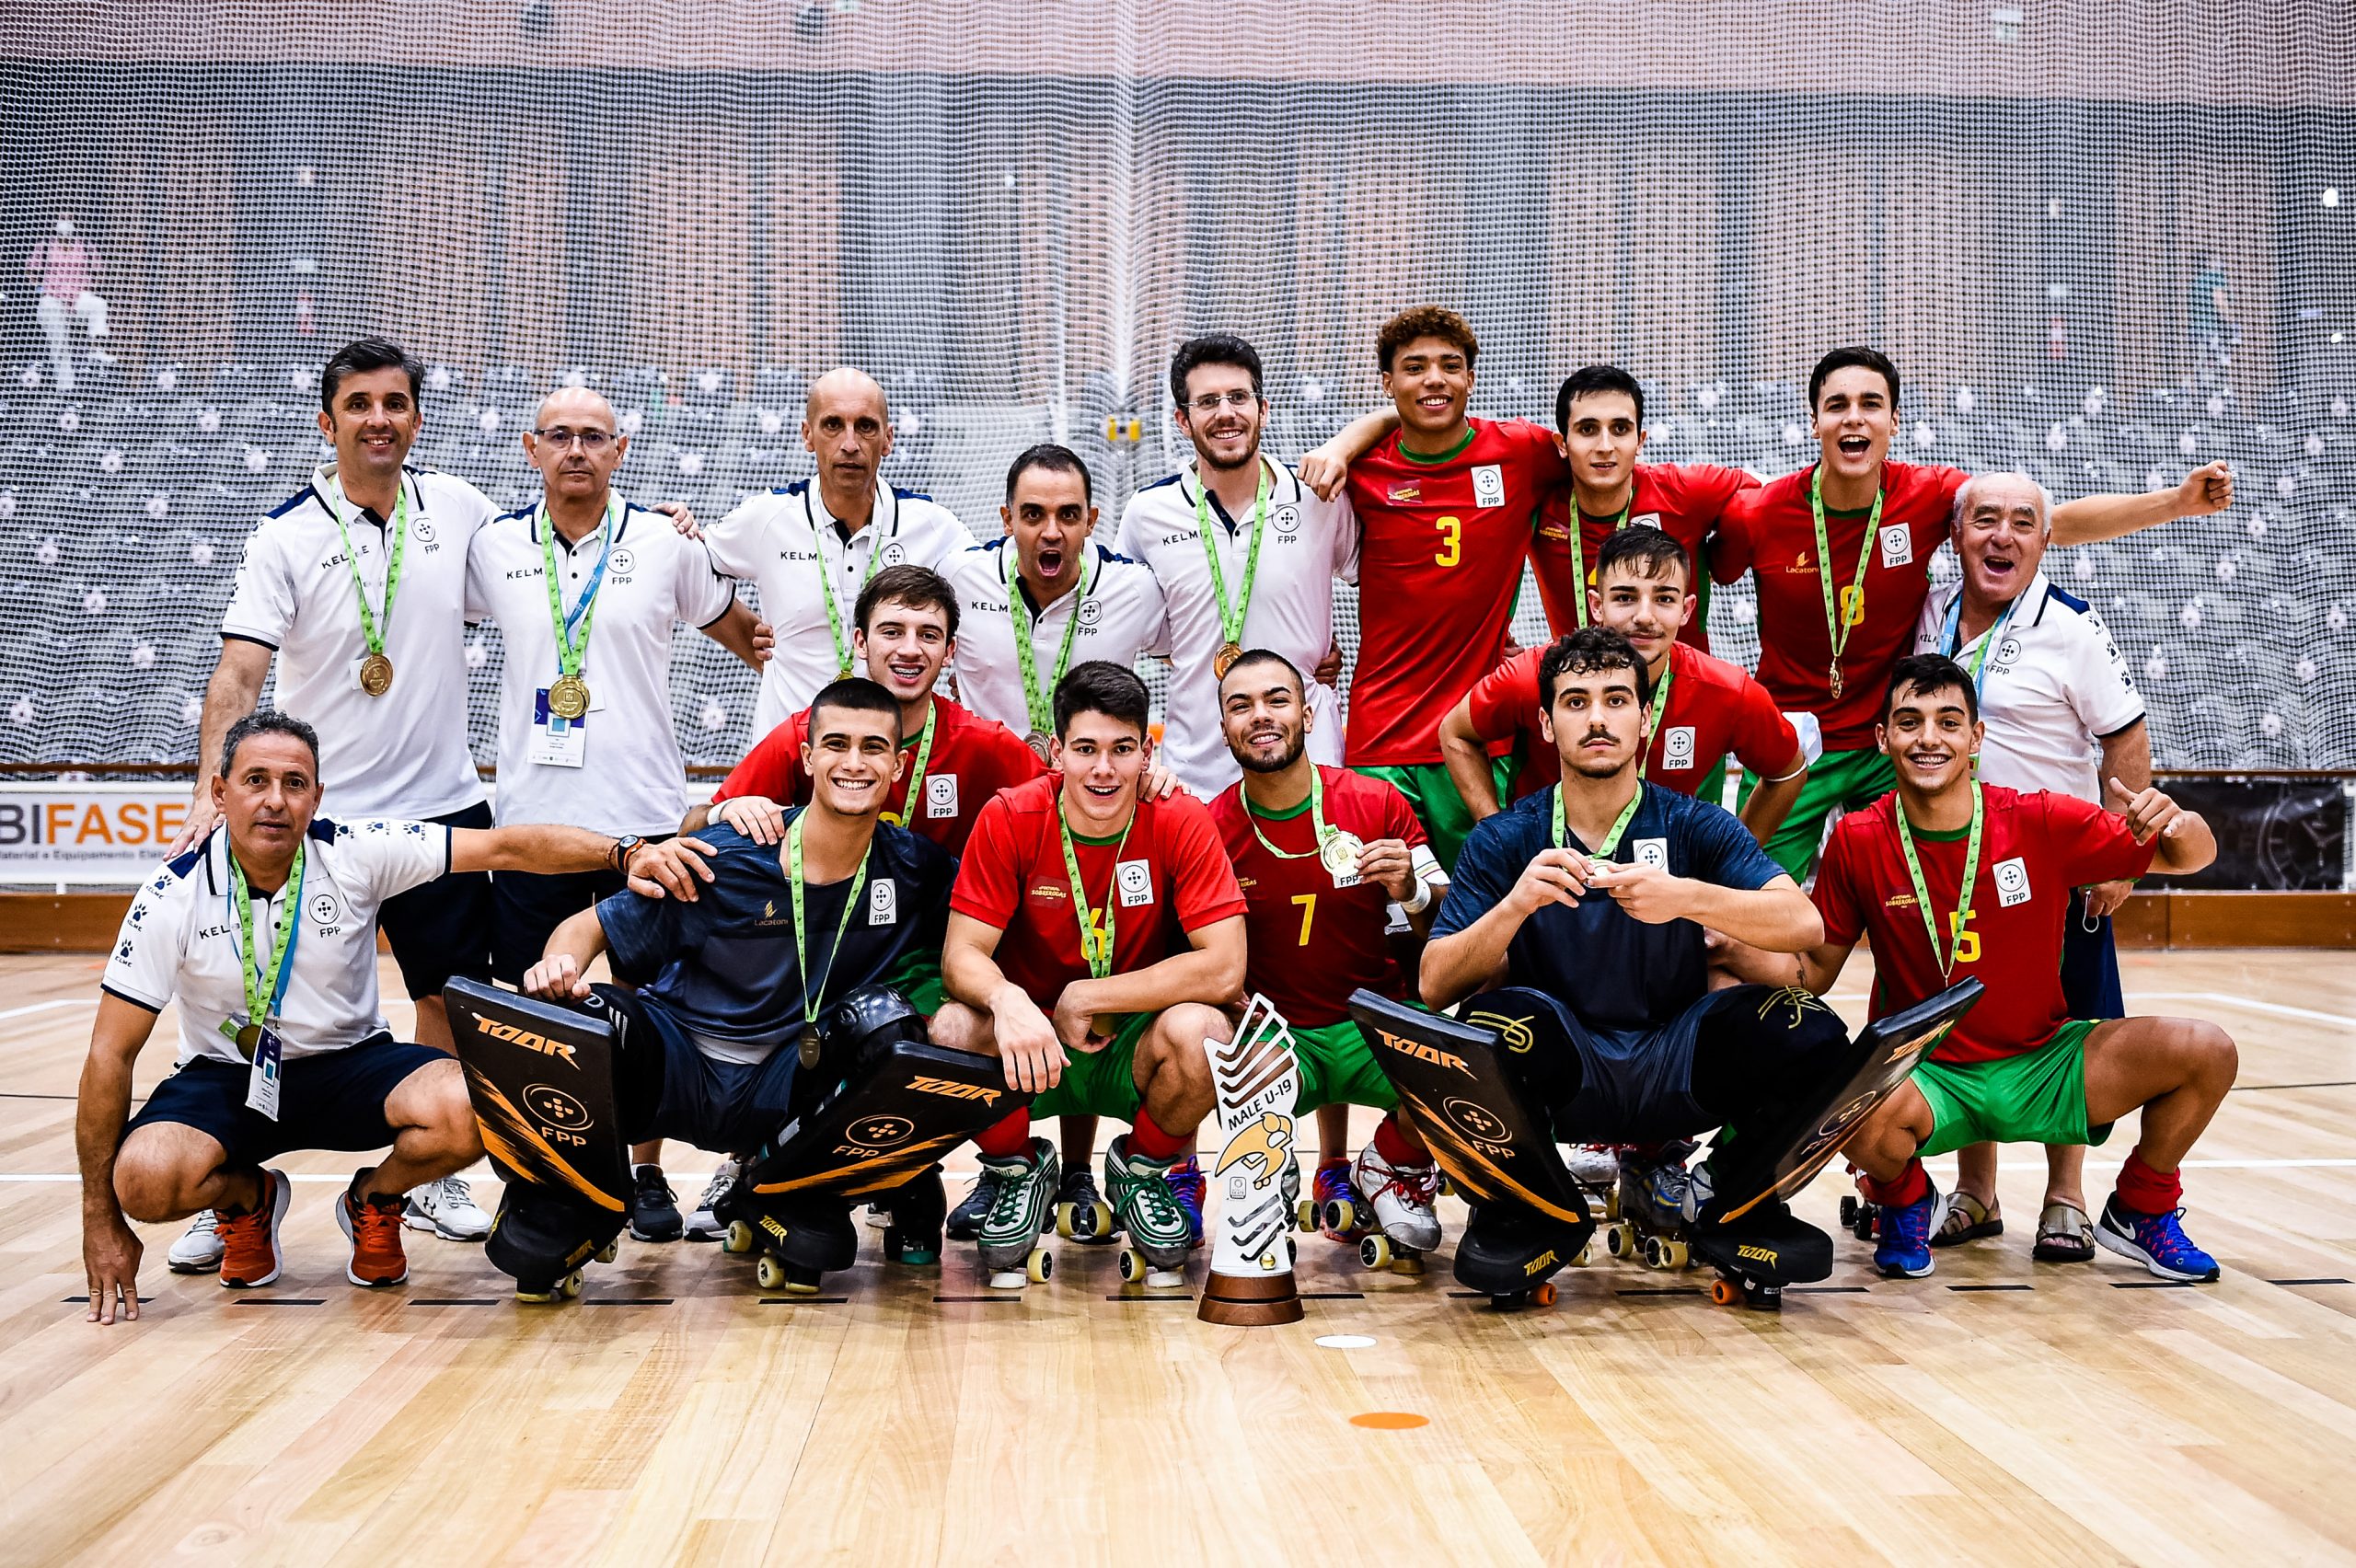 Portugal é campeão europeu sub-19 de futsal pela primeira vez